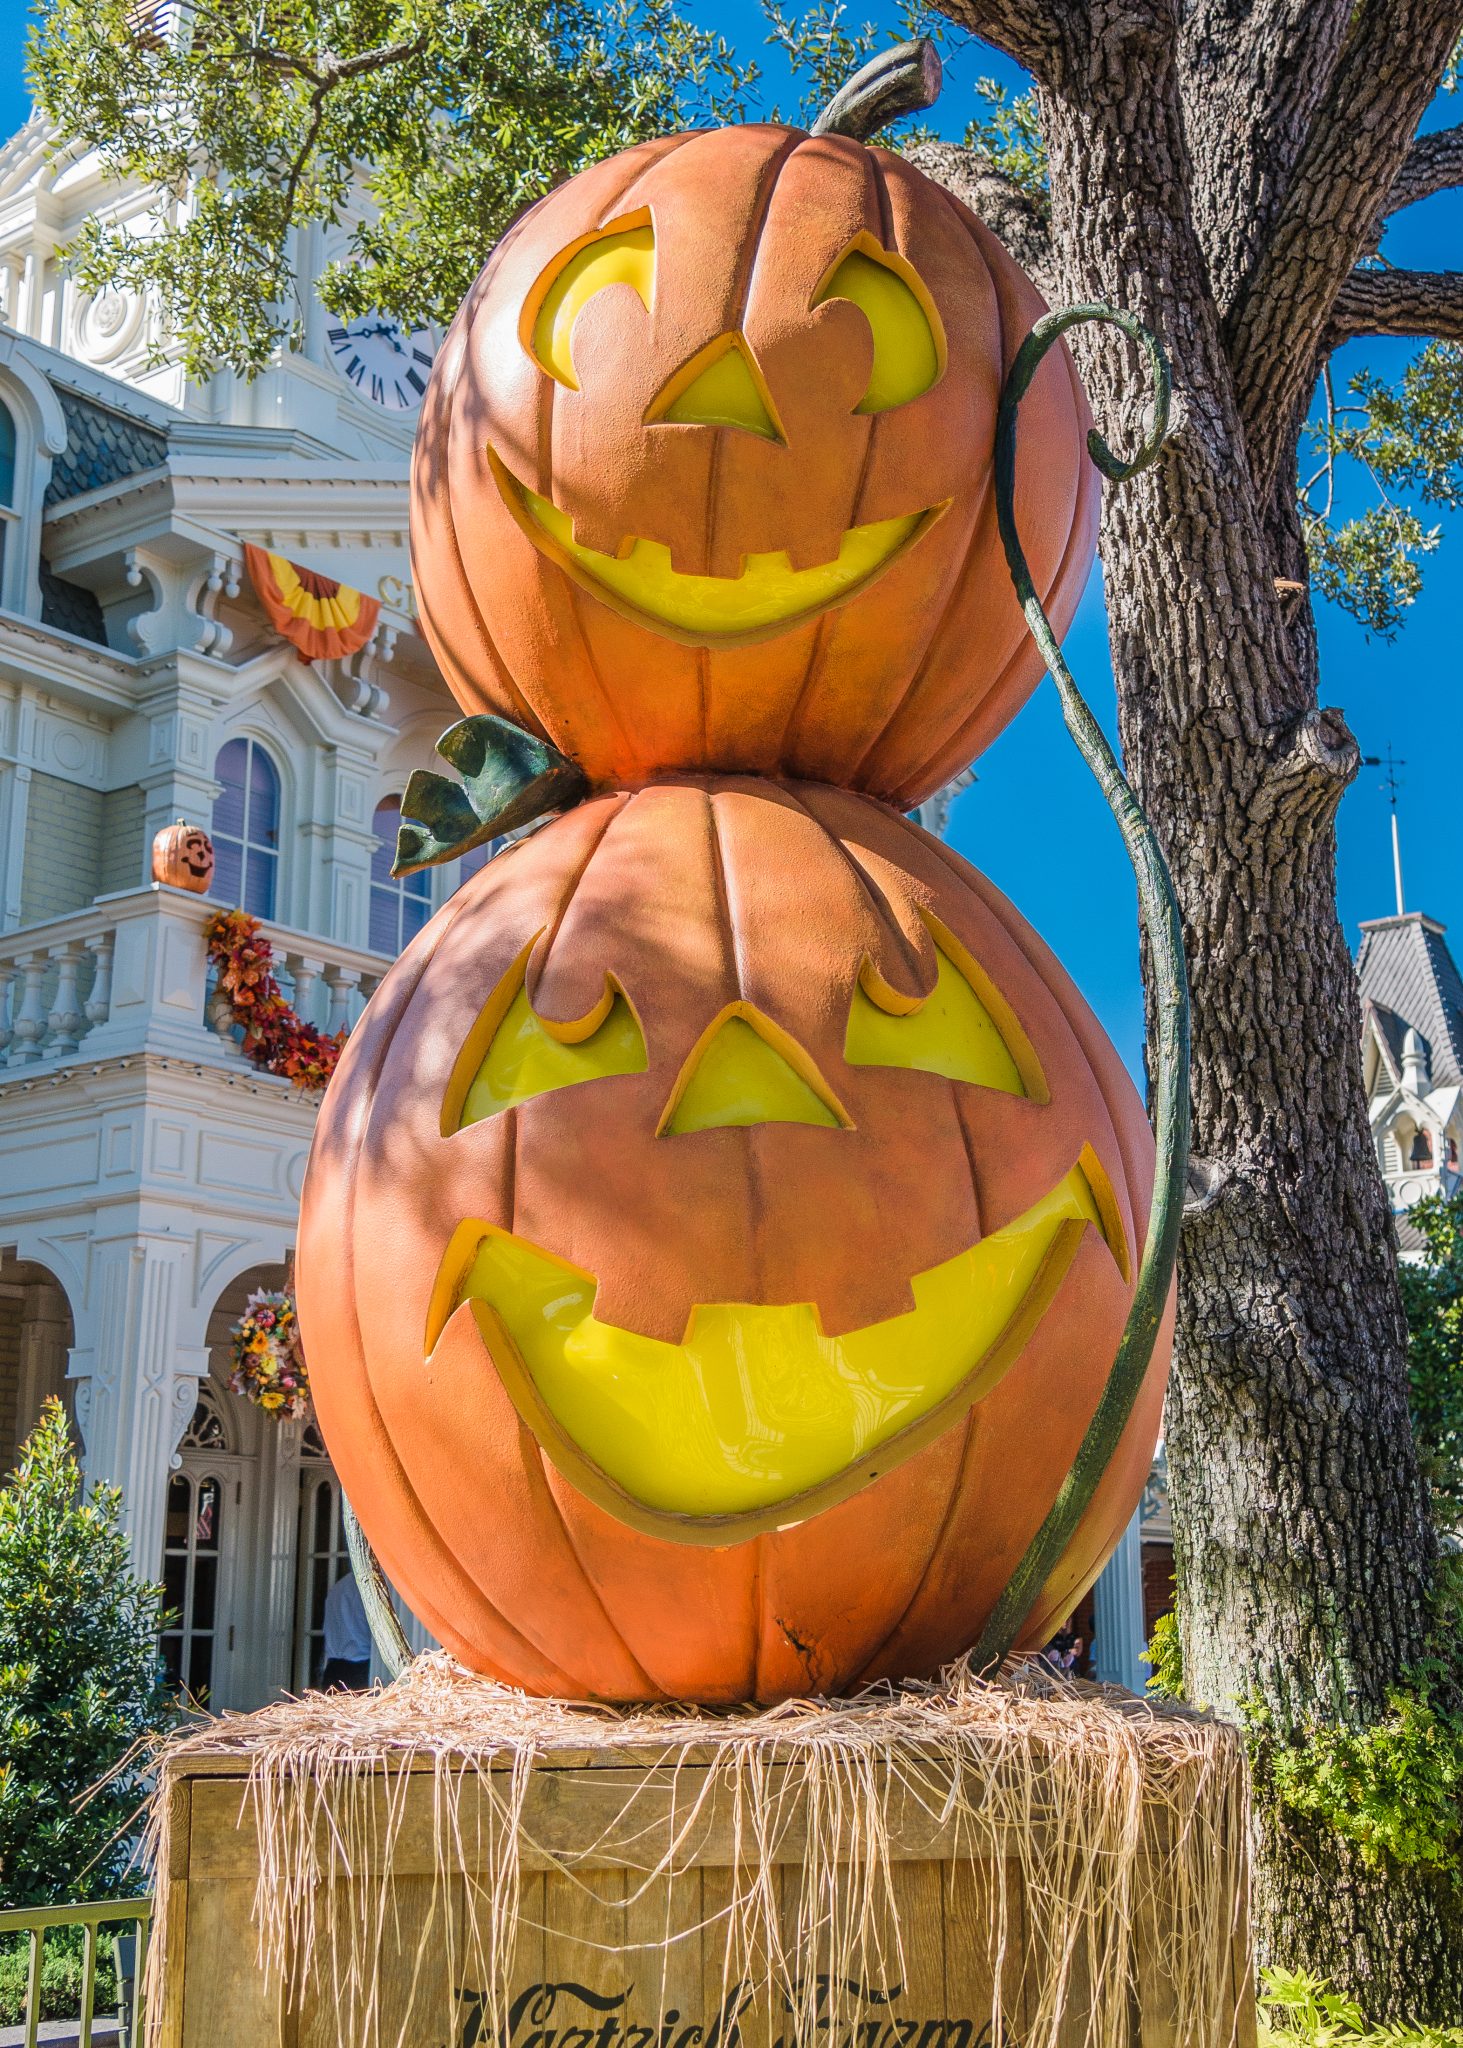 Halloween decorative pumpkins at Disney's Magic Kingdom